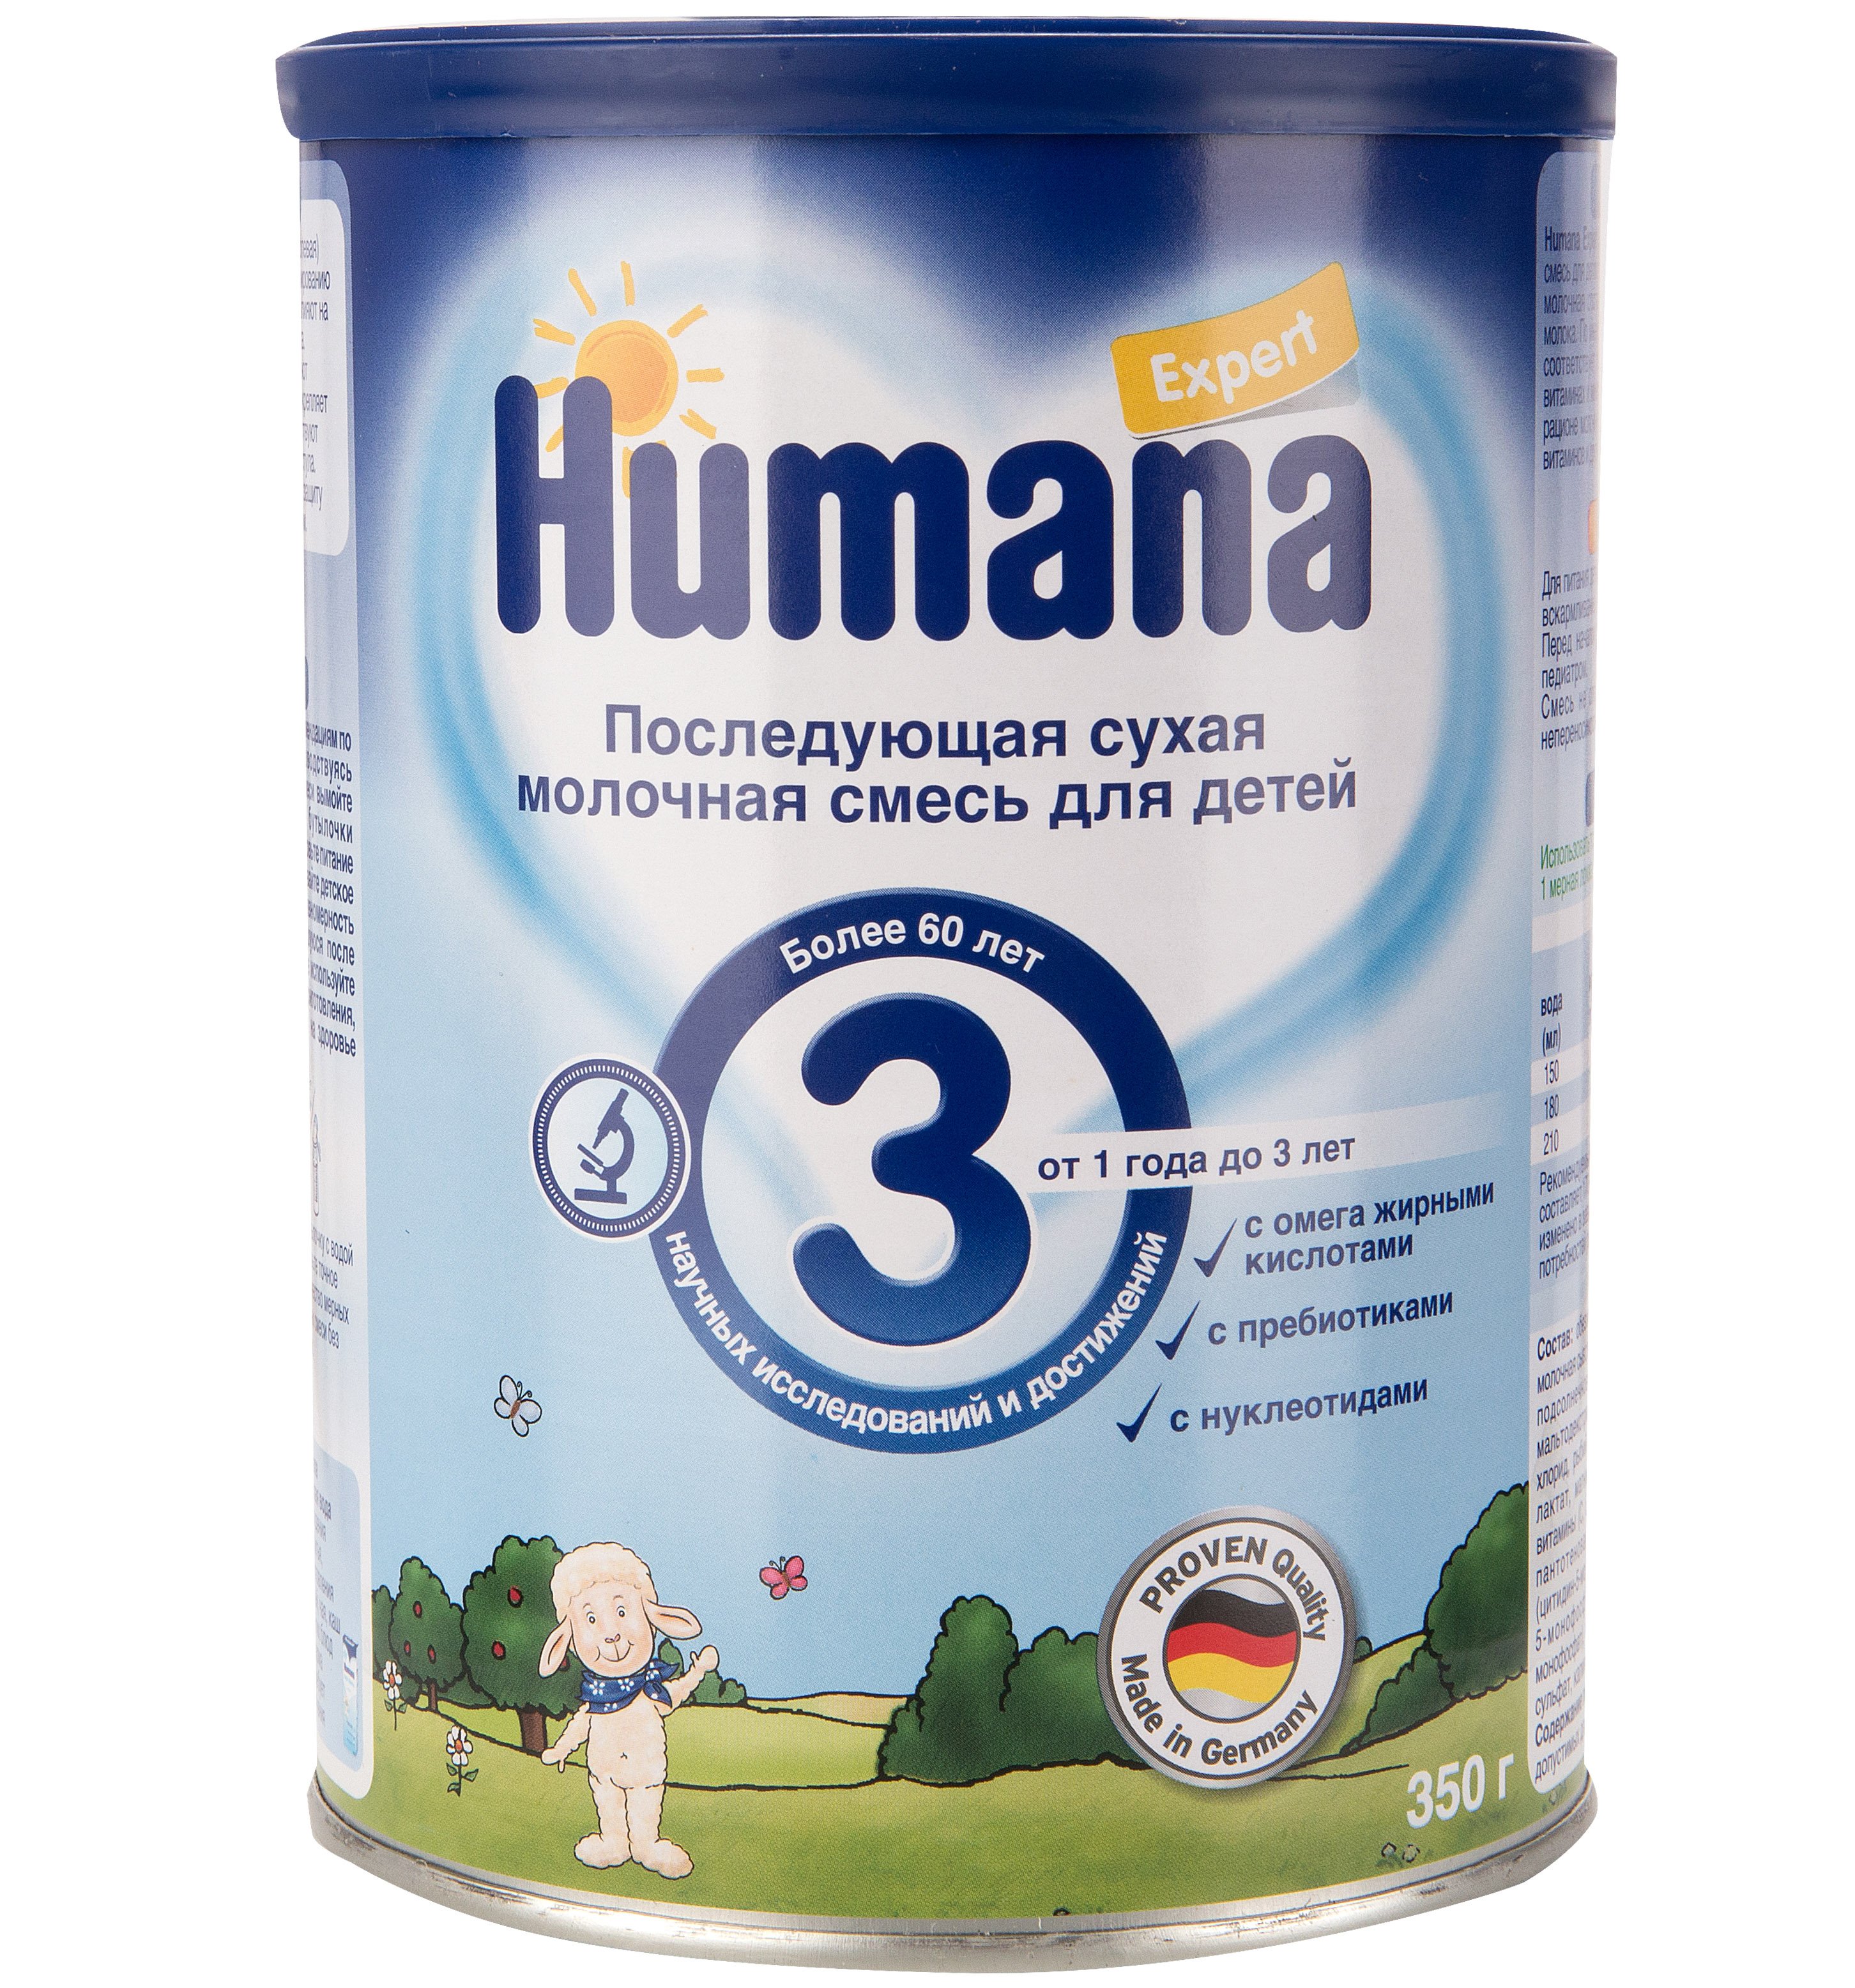 Хороший д3 для новорожденных. Хумана лечебная смесь humana. Хумана 2 смесь. Смесь humana Expert 3 (от 1 года до 3 лет) 350 г. Детское питание смесь смесь Хумана 1.